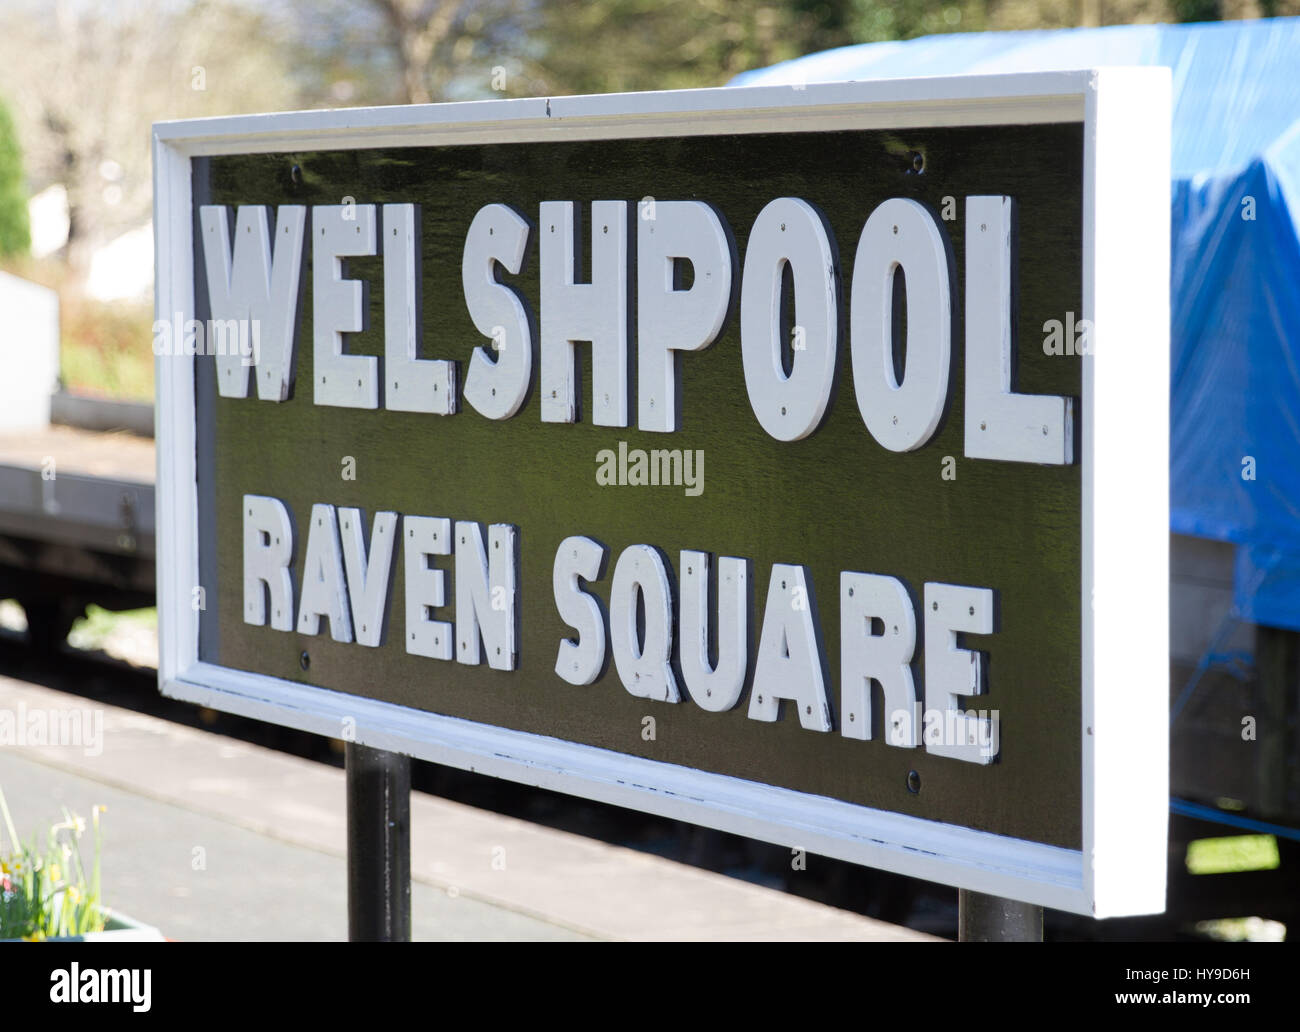 La estación de signo en Welshpool Raven en la estación de tren Plaza de Welshpool y Llanfair Light Railway, patrimonio turista / la atracción de visitantes. Foto de stock